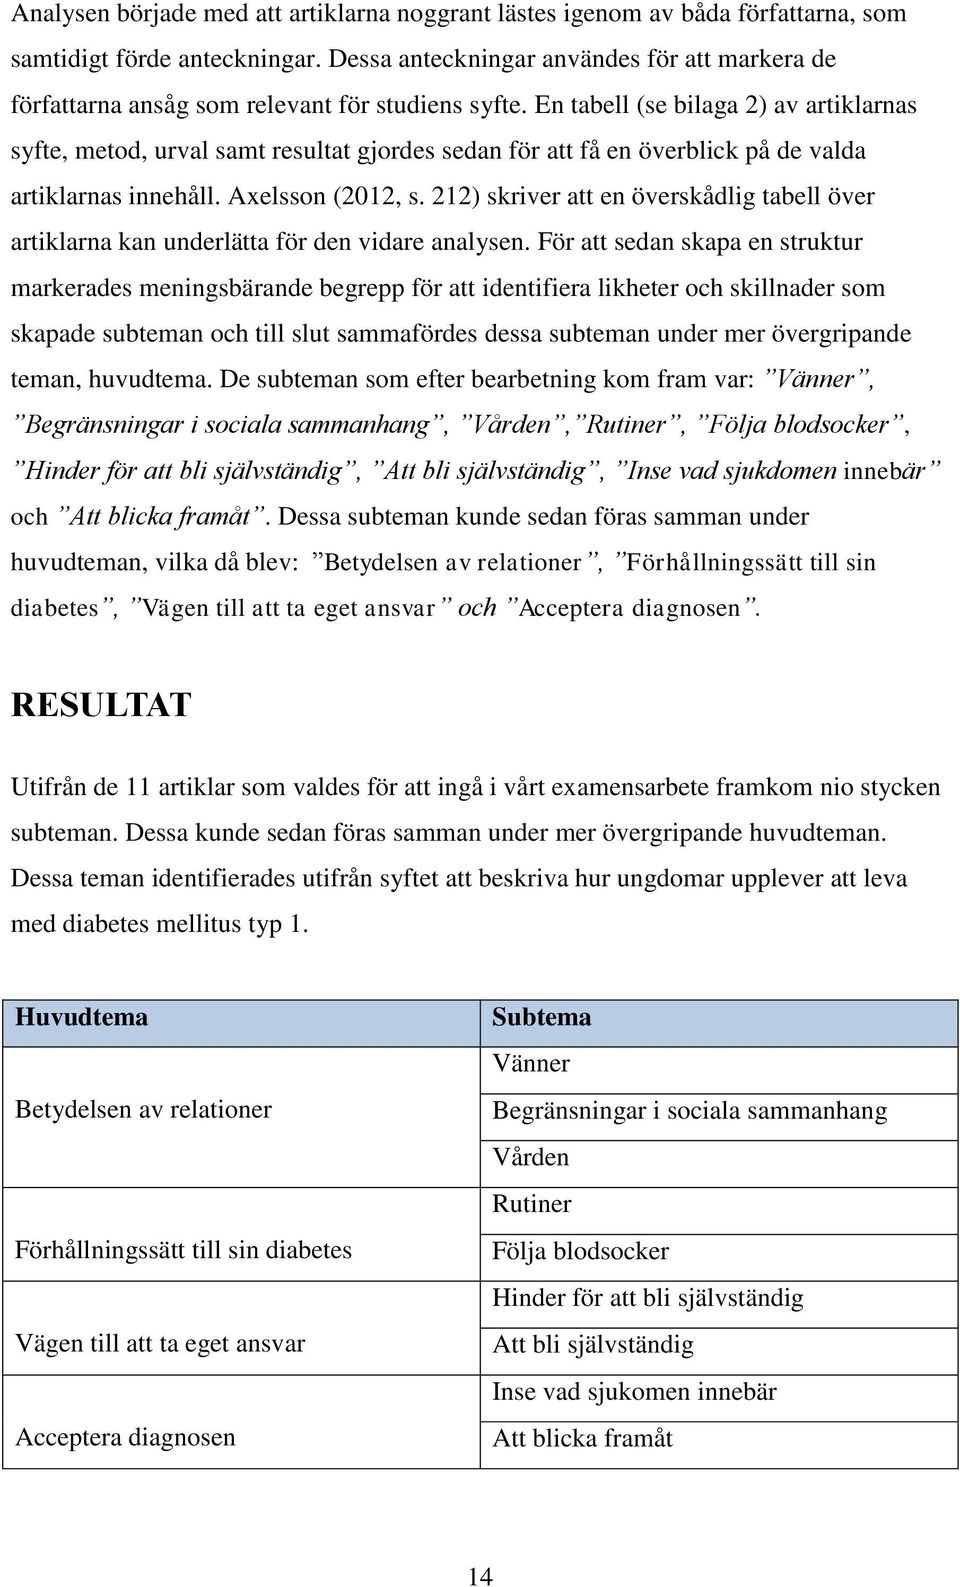 En tabell (se bilaga 2) av artiklarnas syfte, metod, urval samt resultat gjordes sedan för att få en överblick på de valda artiklarnas innehåll. Axelsson (2012, s.